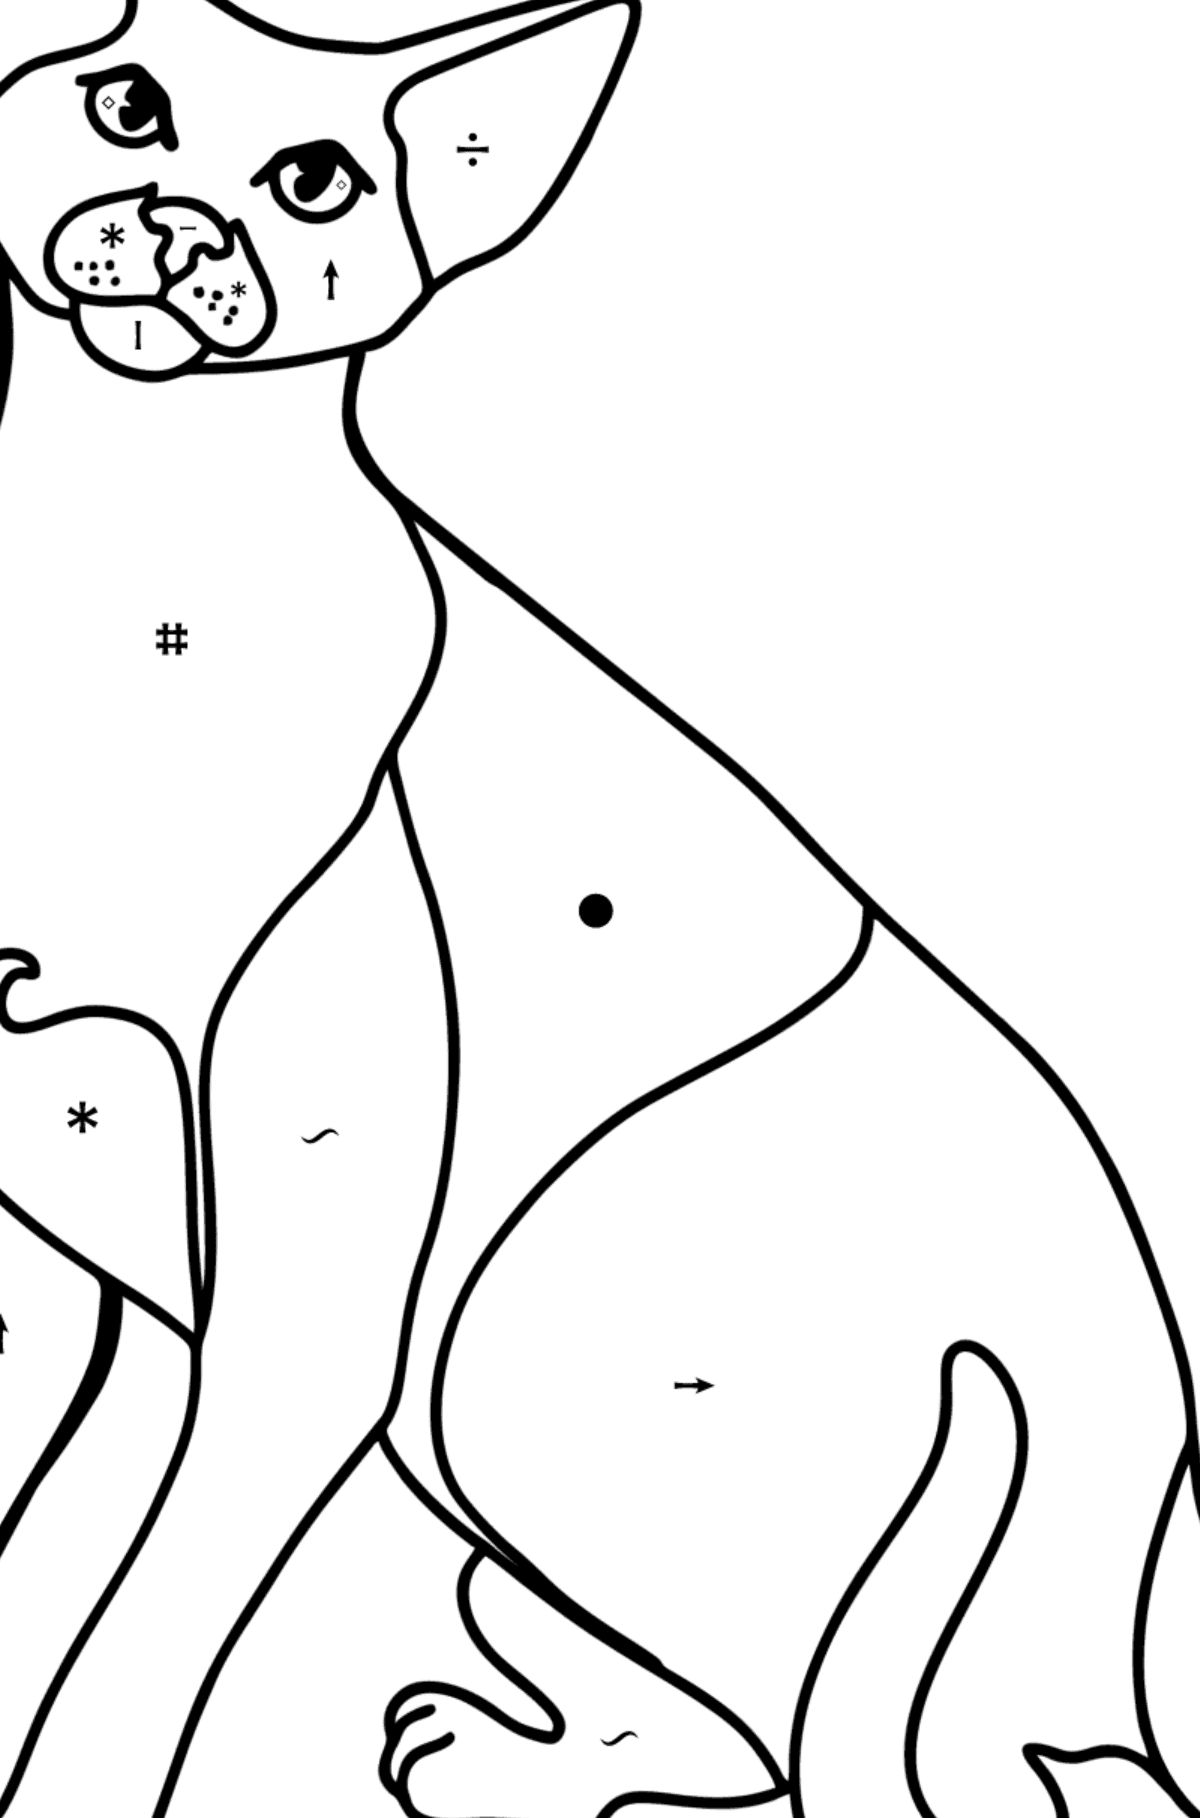 Tegning til fargelegging orientalsk korthåret katt - Fargelegge etter symboler for barn